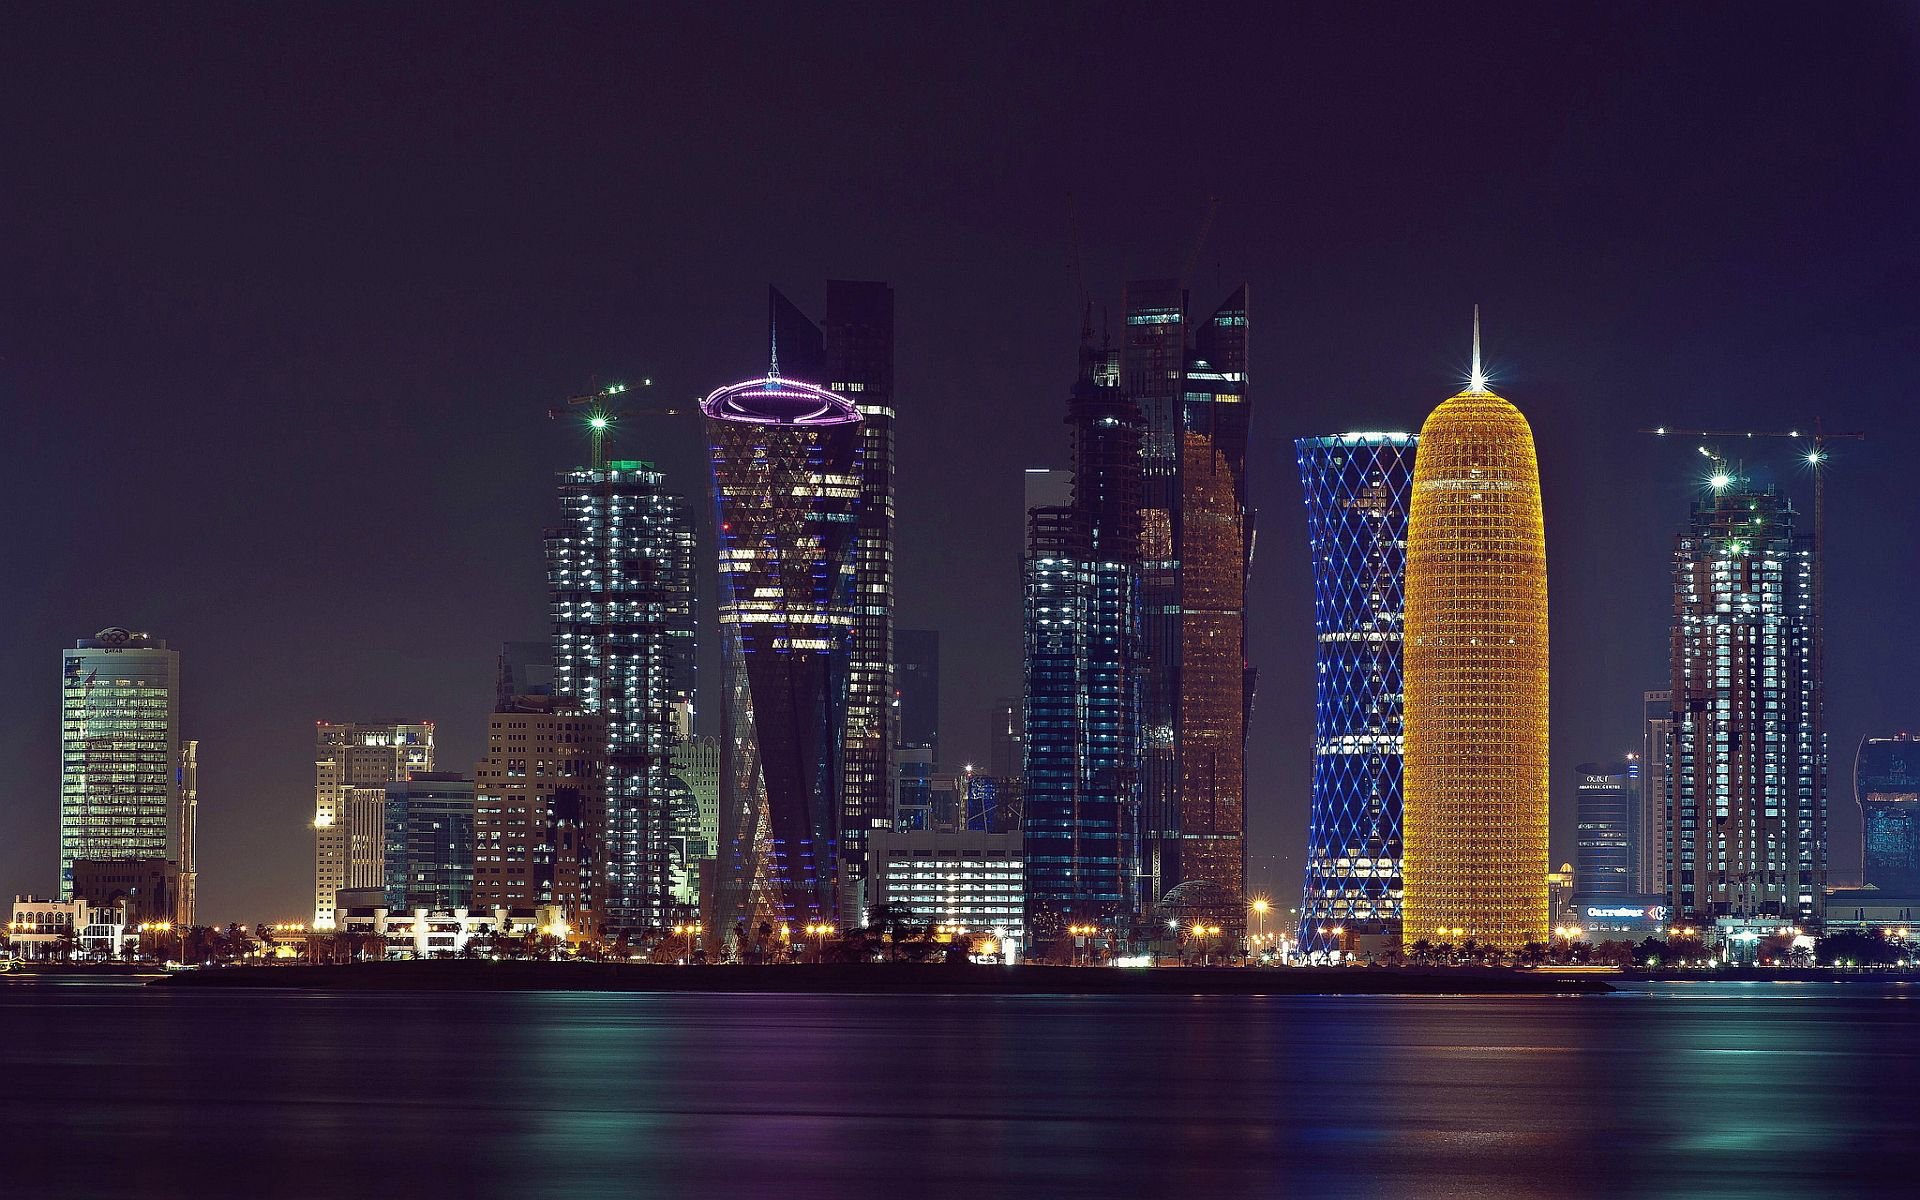 Với ảnh nền Doha đẹp cho màn hình này, bạn sẽ được trải nghiệm một không gian sống sang trọng và đầy sức sống. Hình ảnh nền lung linh này sẽ làm tăng thêm sự phấn khích và cảm giác độc đáo cho màn hình của bạn.